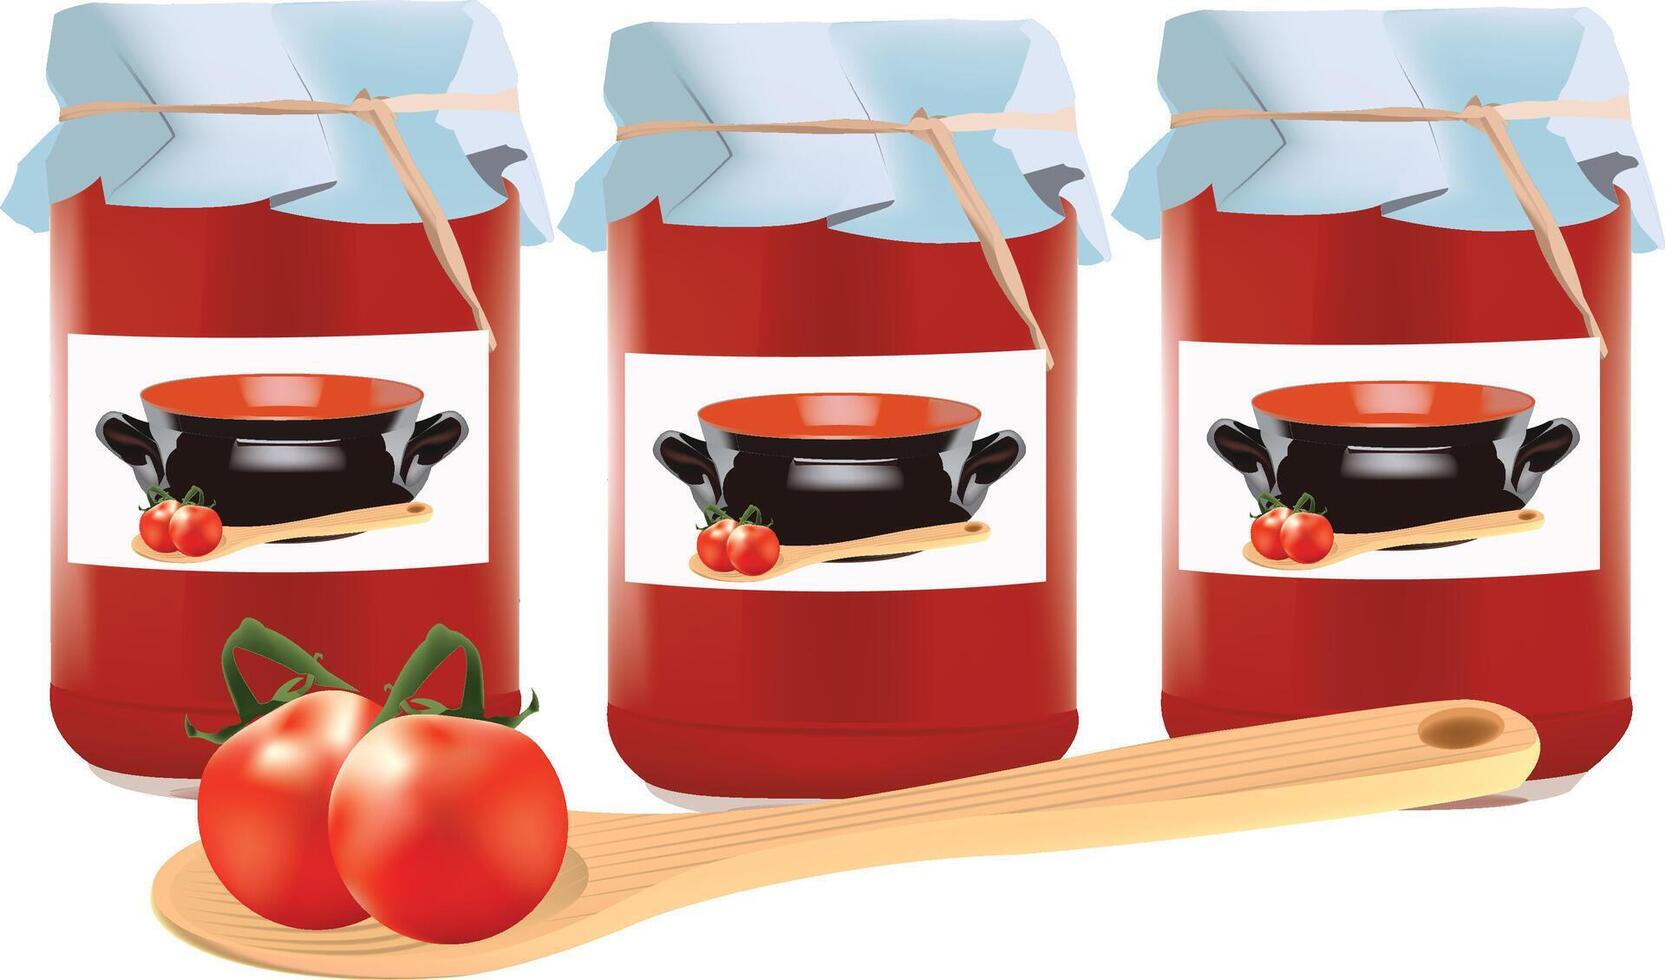 tomat sås burkar och matlagning redskap illustration vektor